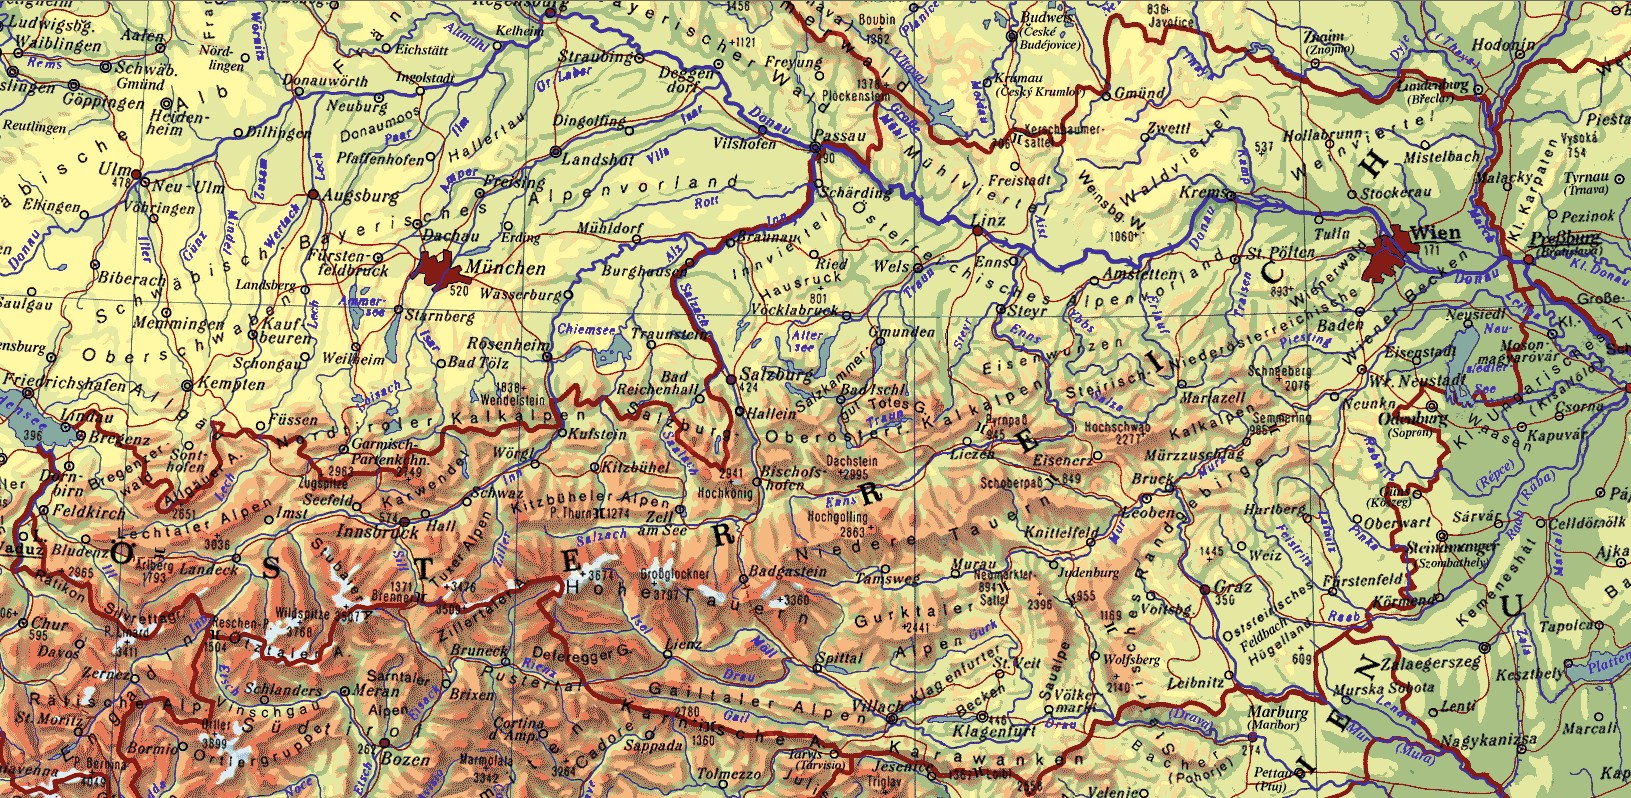 Landkarten | AEIOU sterreich-Lexikon im Austria-Forum